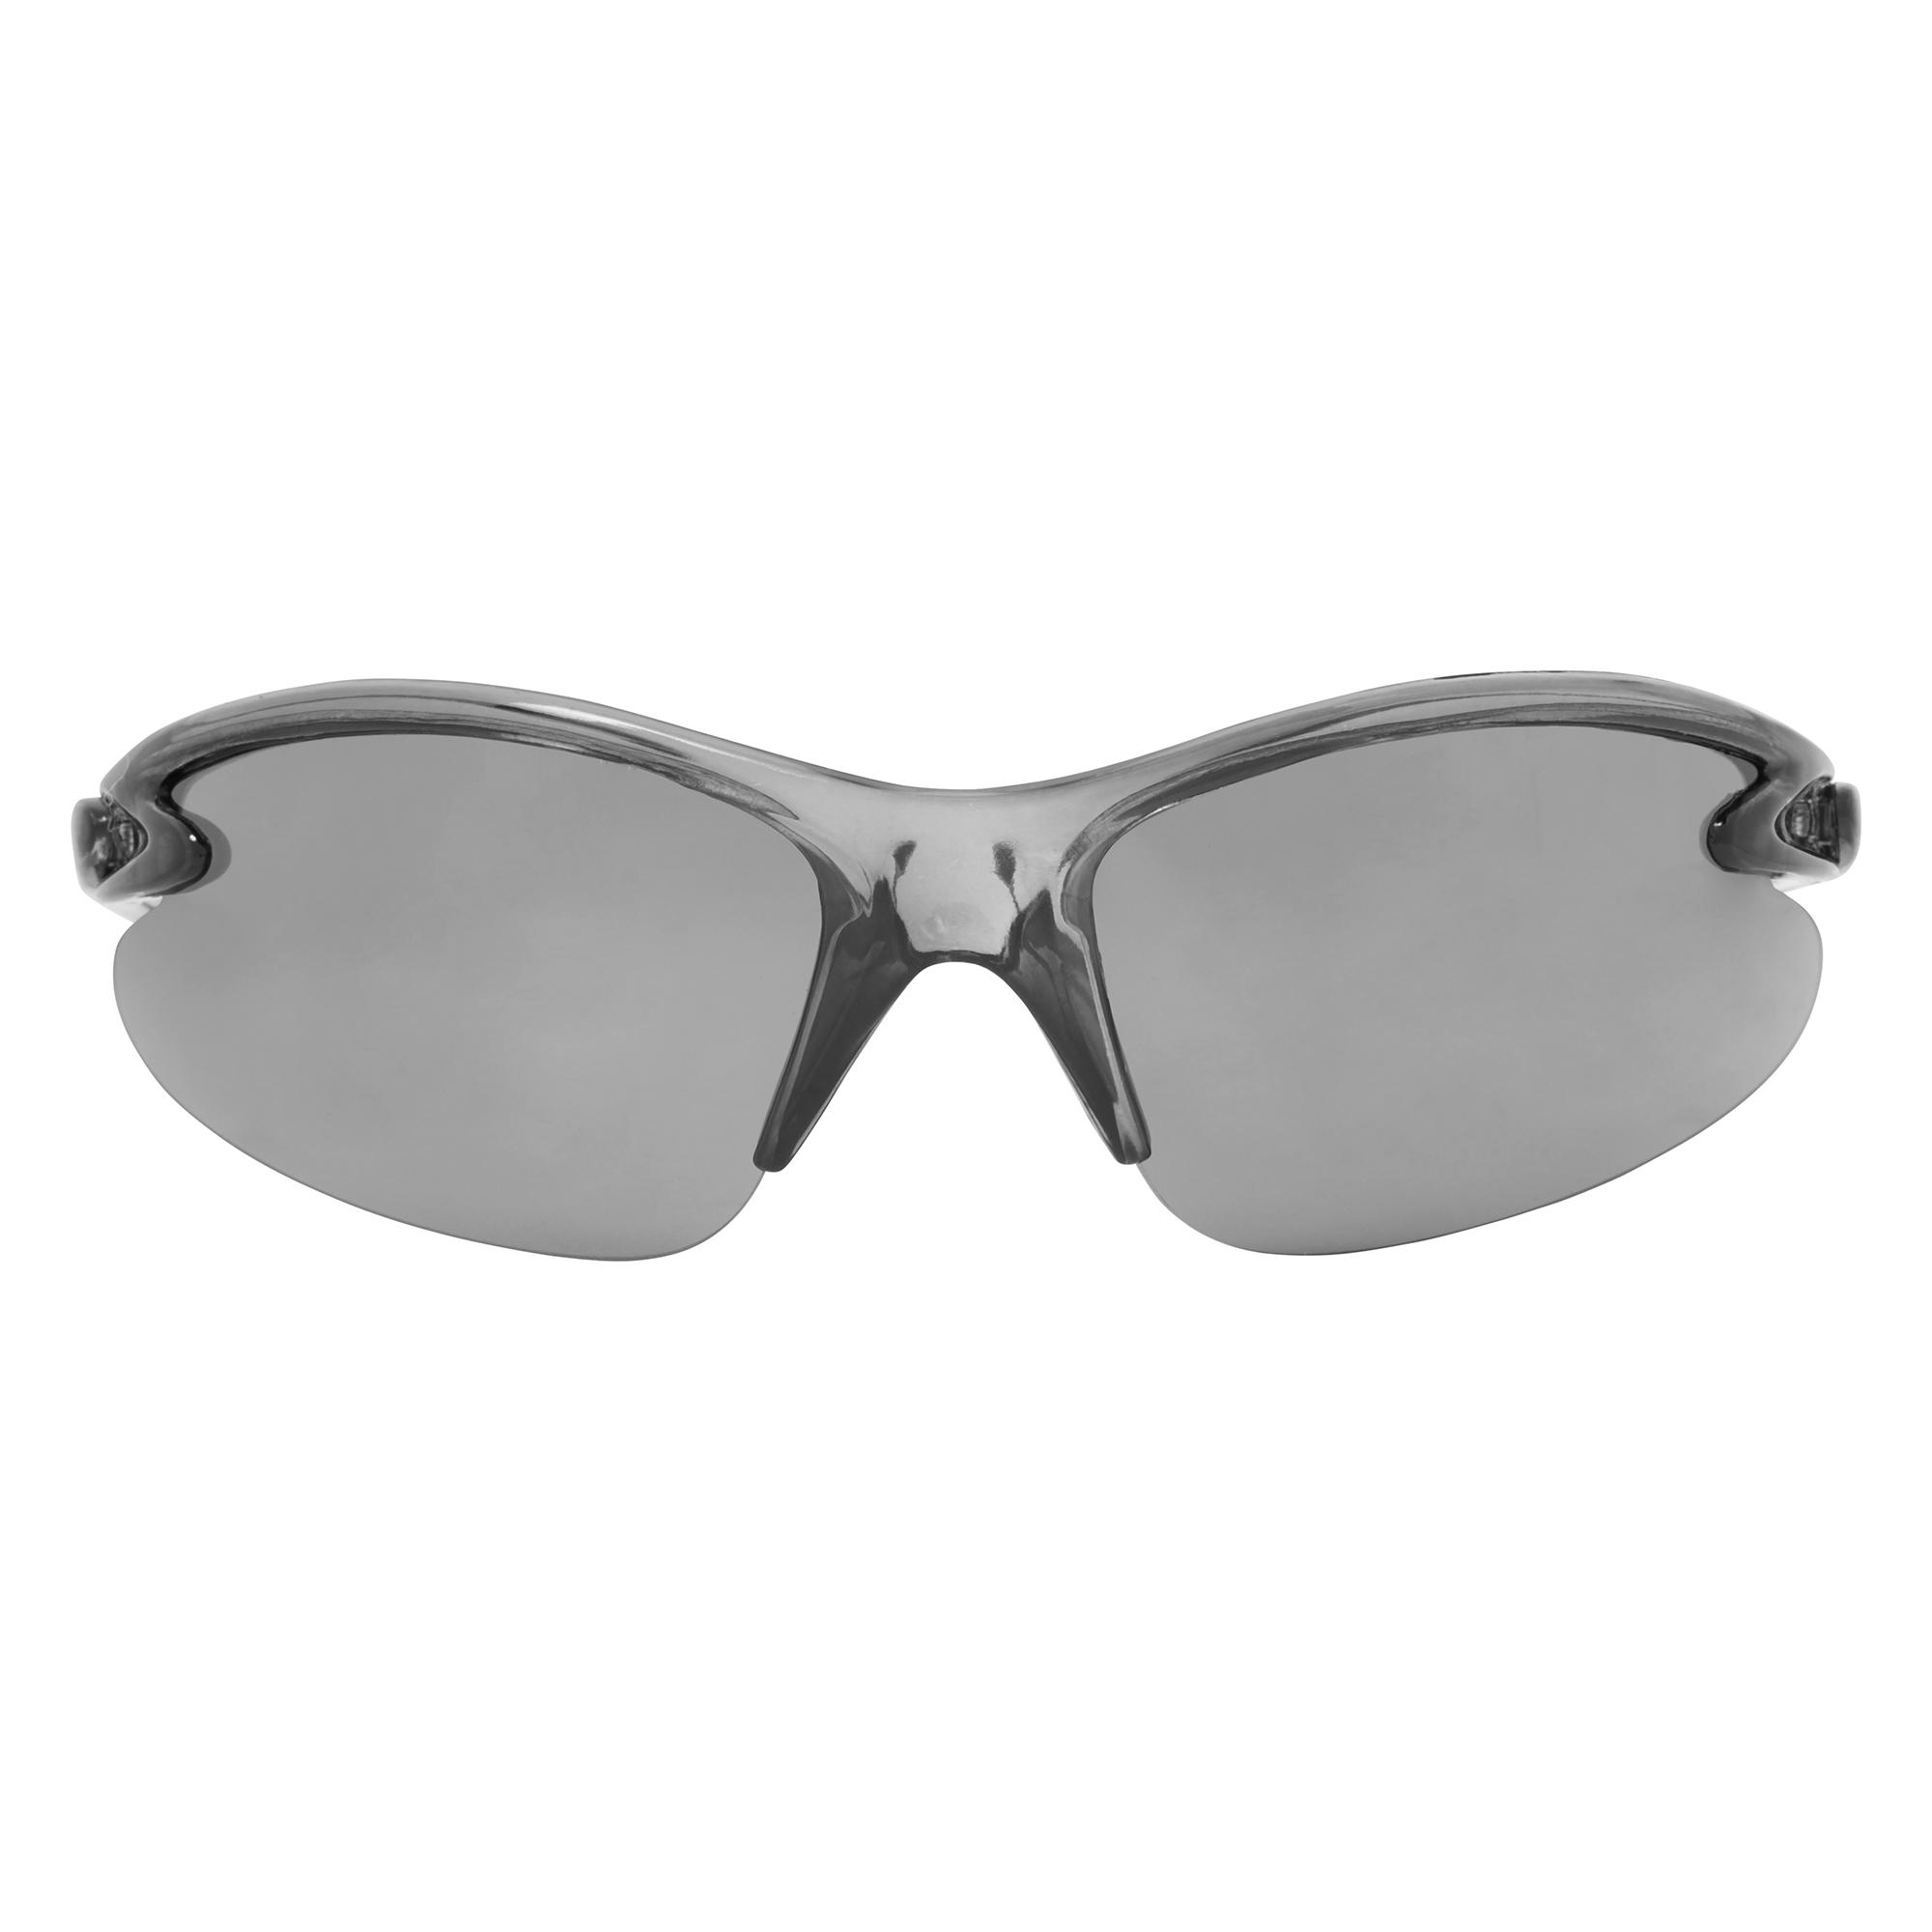 Dhb Triple Lens Sunglasses  Smoke